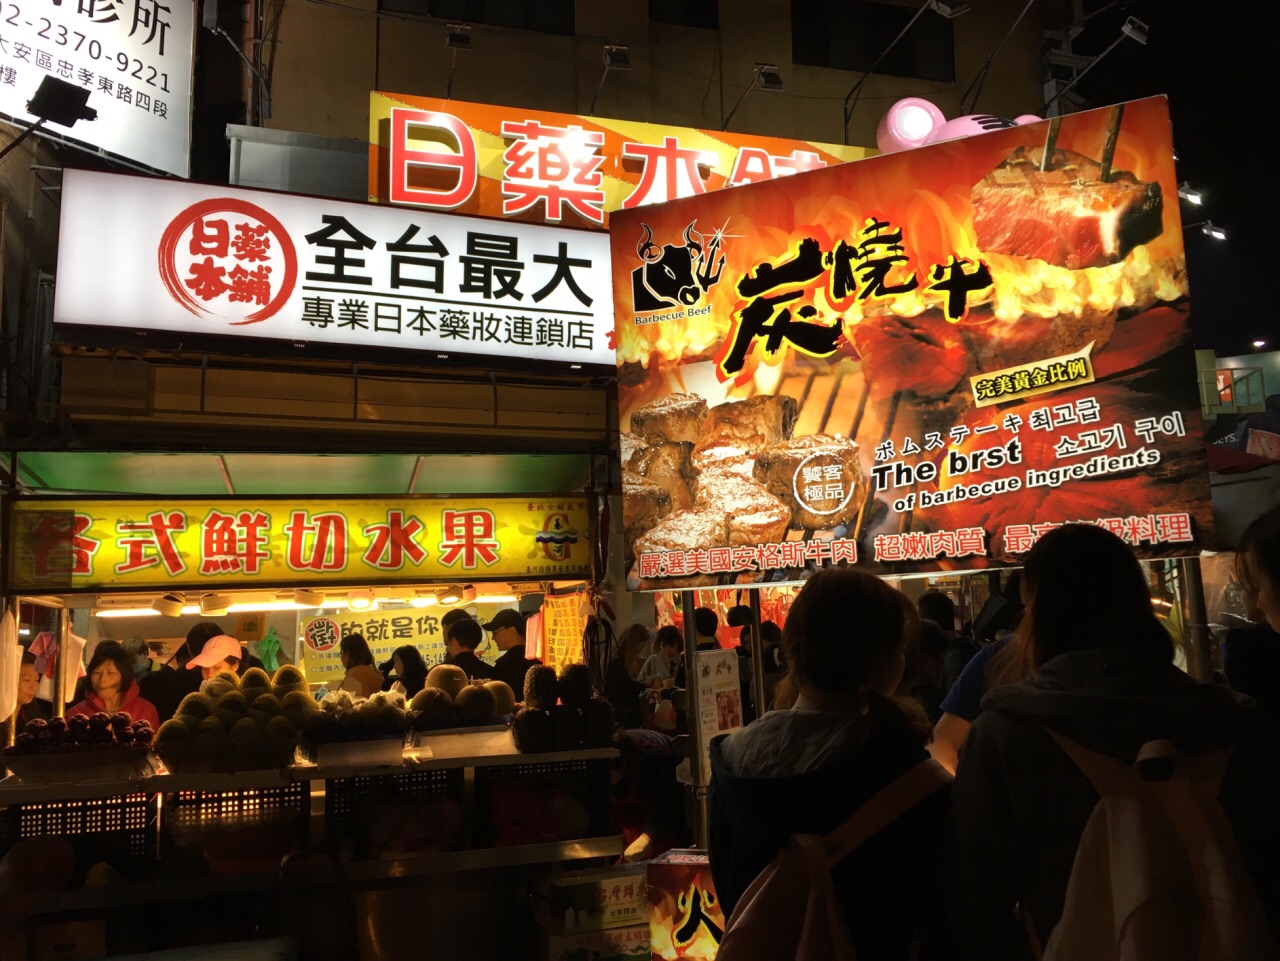 士林夜市shilin night market